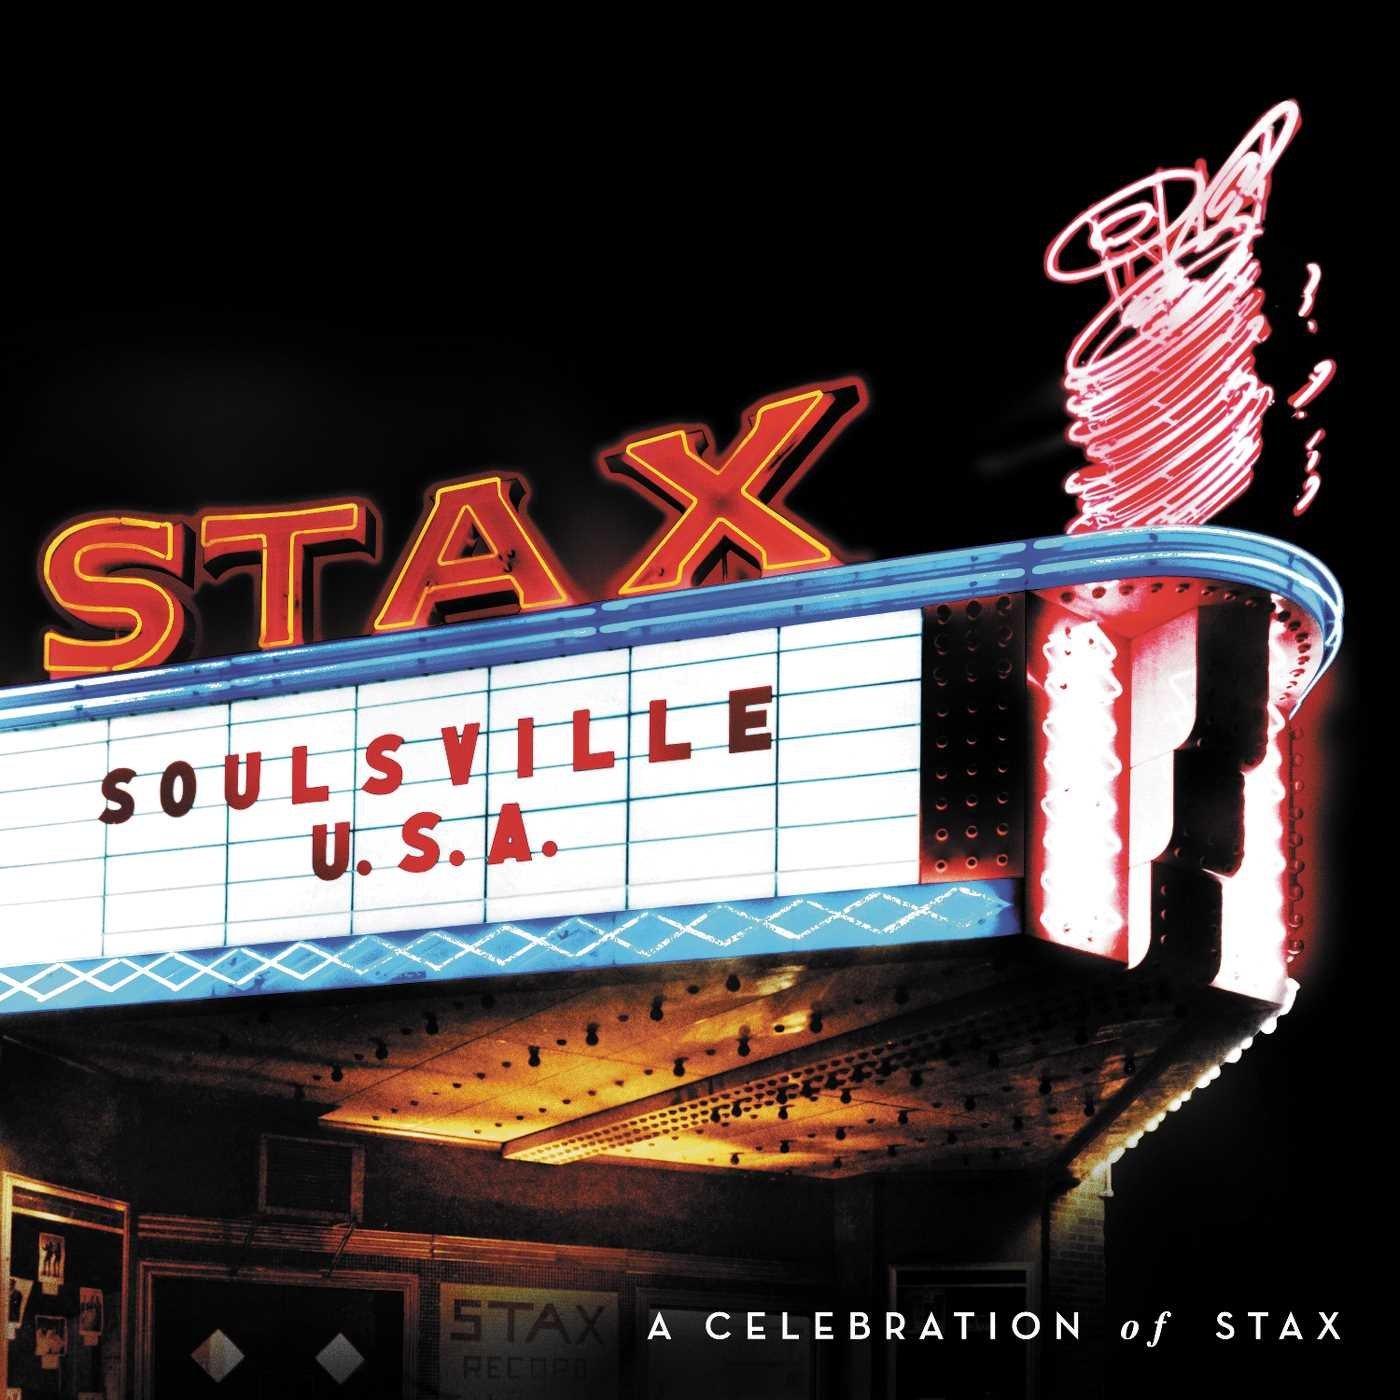 Soulsville U.S.A.: A Celebration of Stax